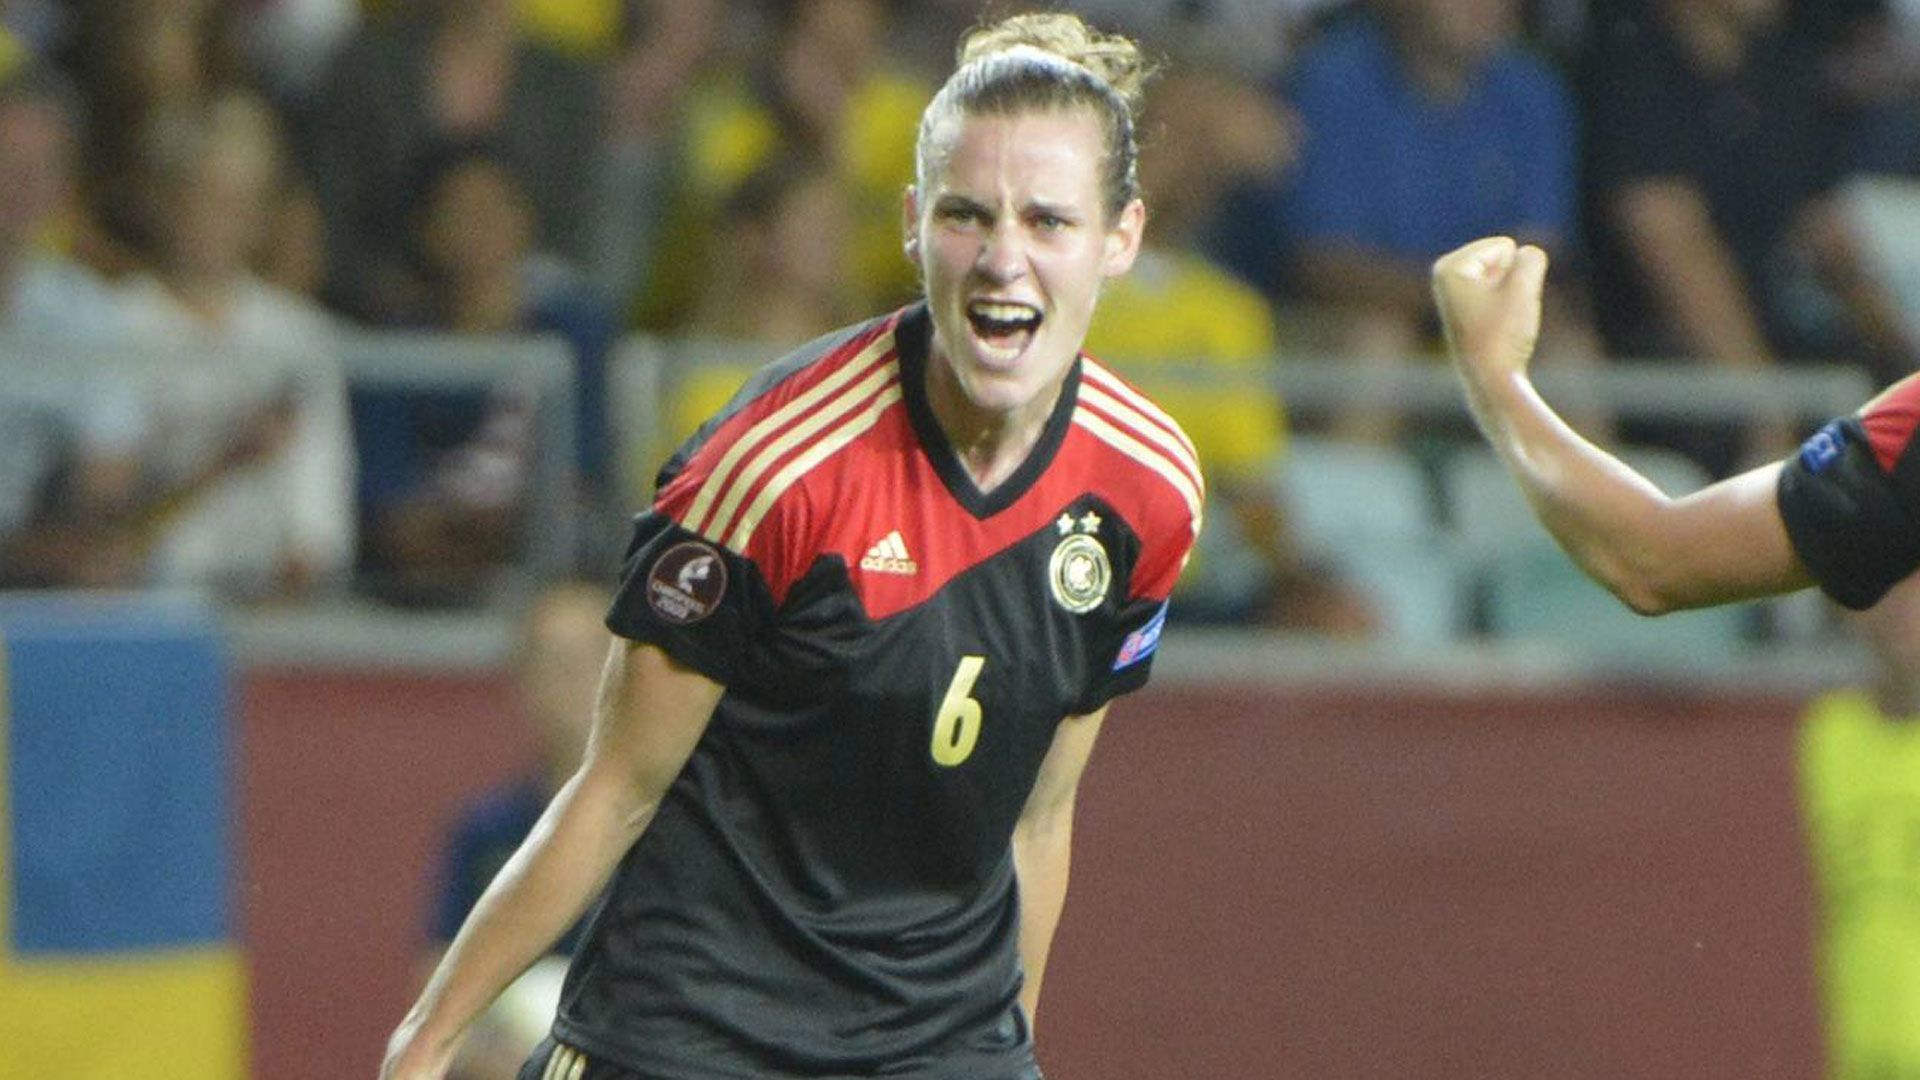 
                <strong>Simone Laudehr</strong><br>
                Simone Laudehr überzeugte wie immer mit ihrem unbändigen Willen. Etwa 15 Minuten vor dem Ende, wurde sie sichtlich erschöpft als zweite deutsche Spielerin ausgewechselt. Die zweimalige Europameisterin beendete im vergangenen Jahr als Spielerin des FC Bayern München ihre Profikarriere. 
              